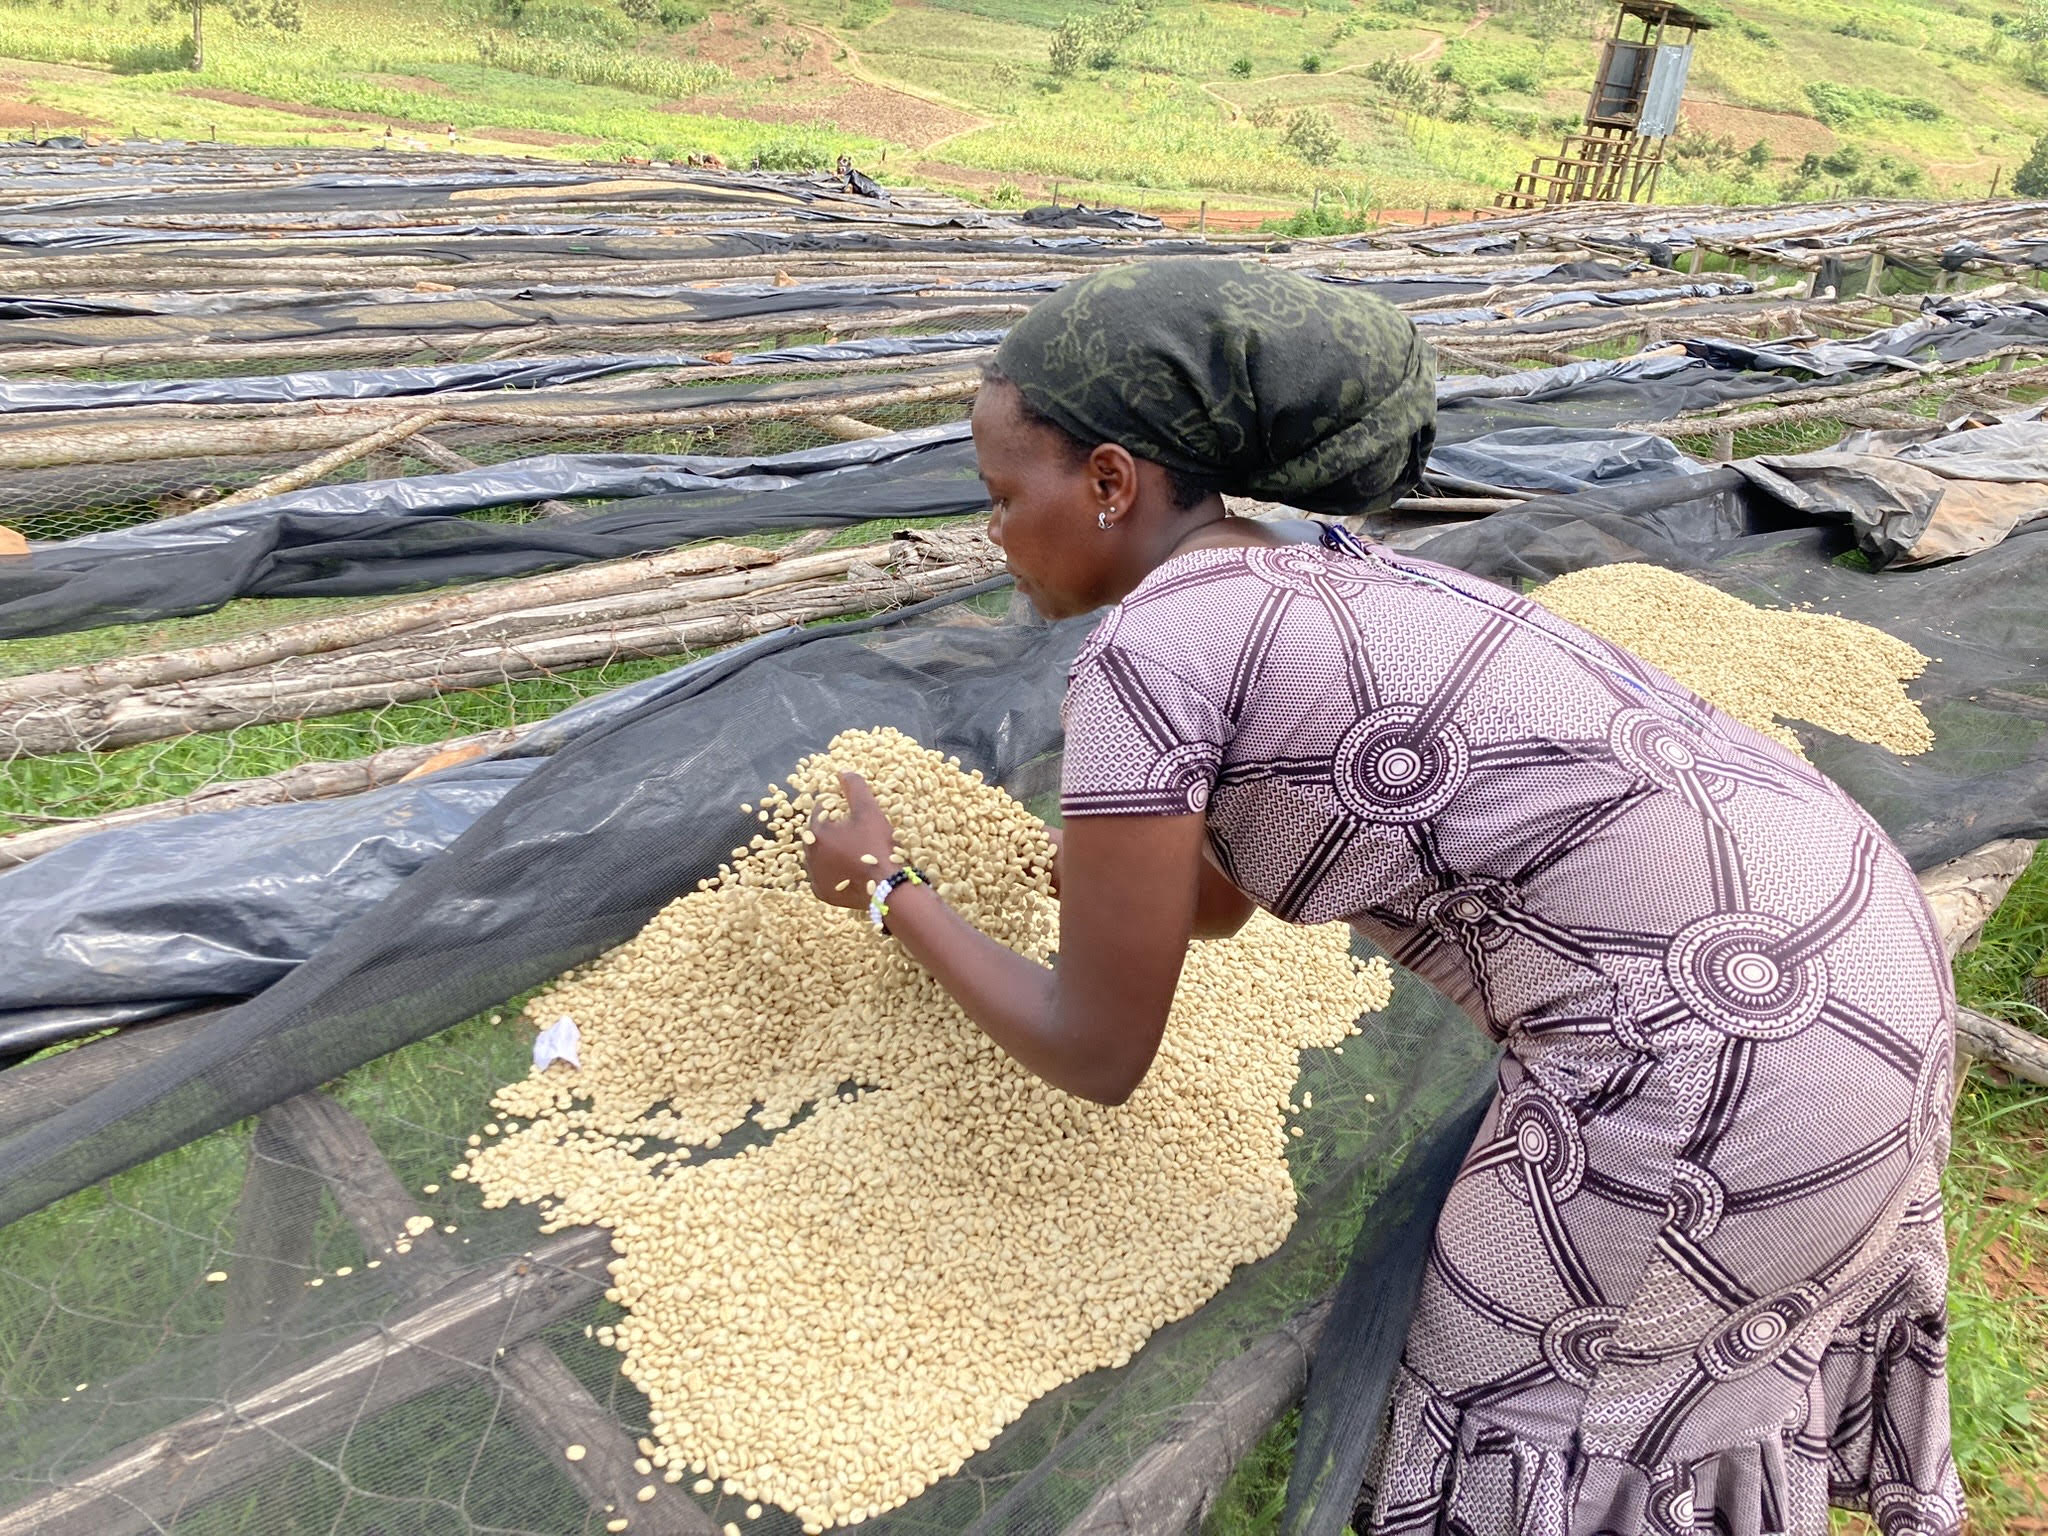 "A Rwandan farmer sifts through coffee plants on a coffee farm"